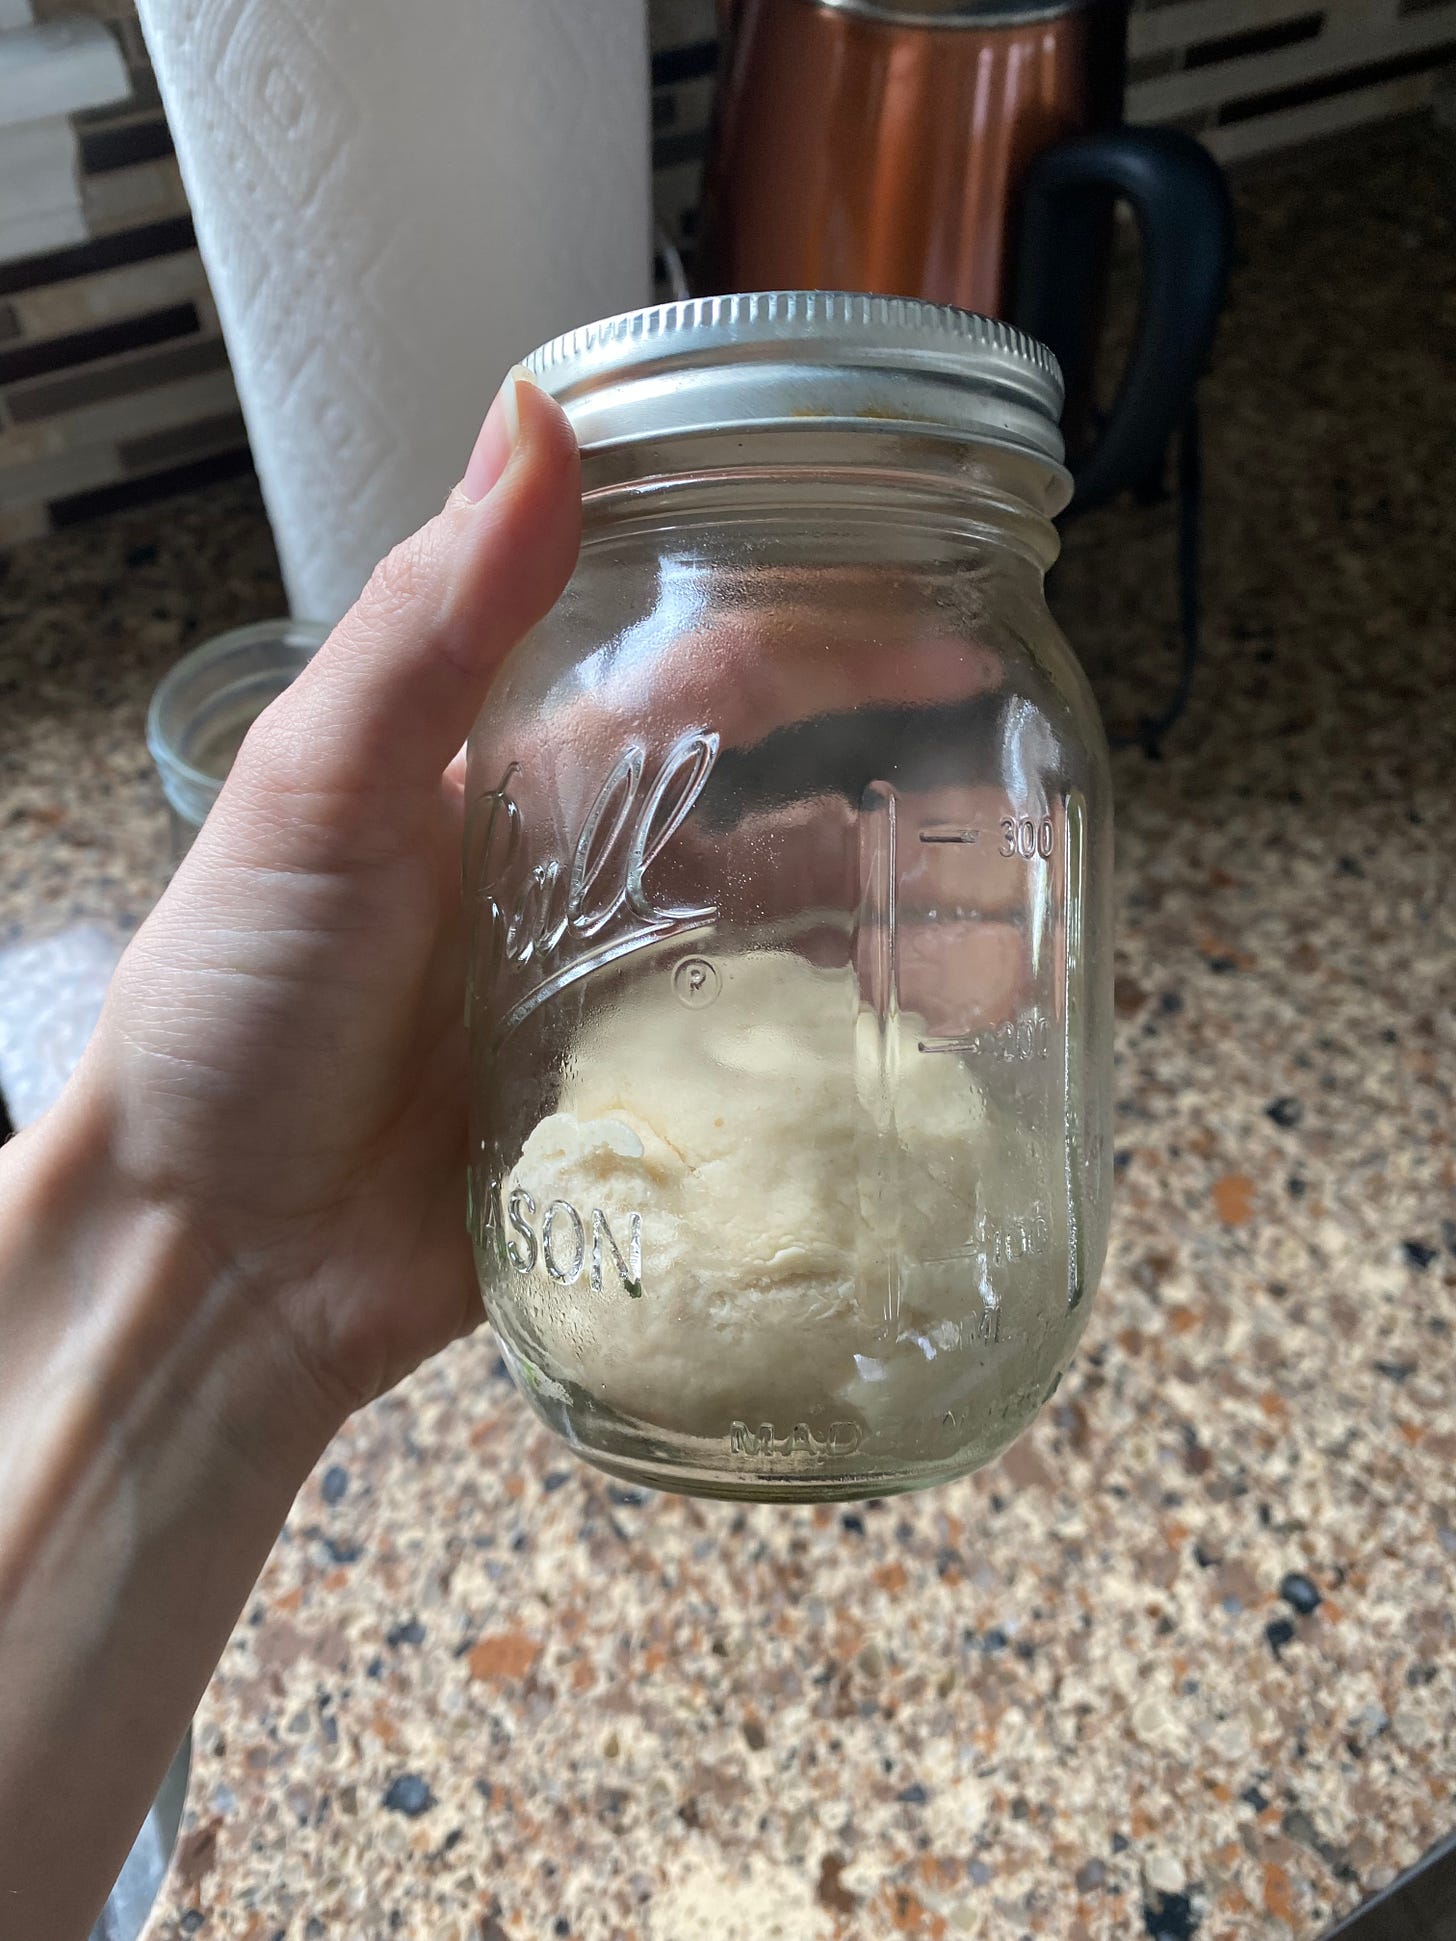 Dry sourdough starter method from Elliott Homestead